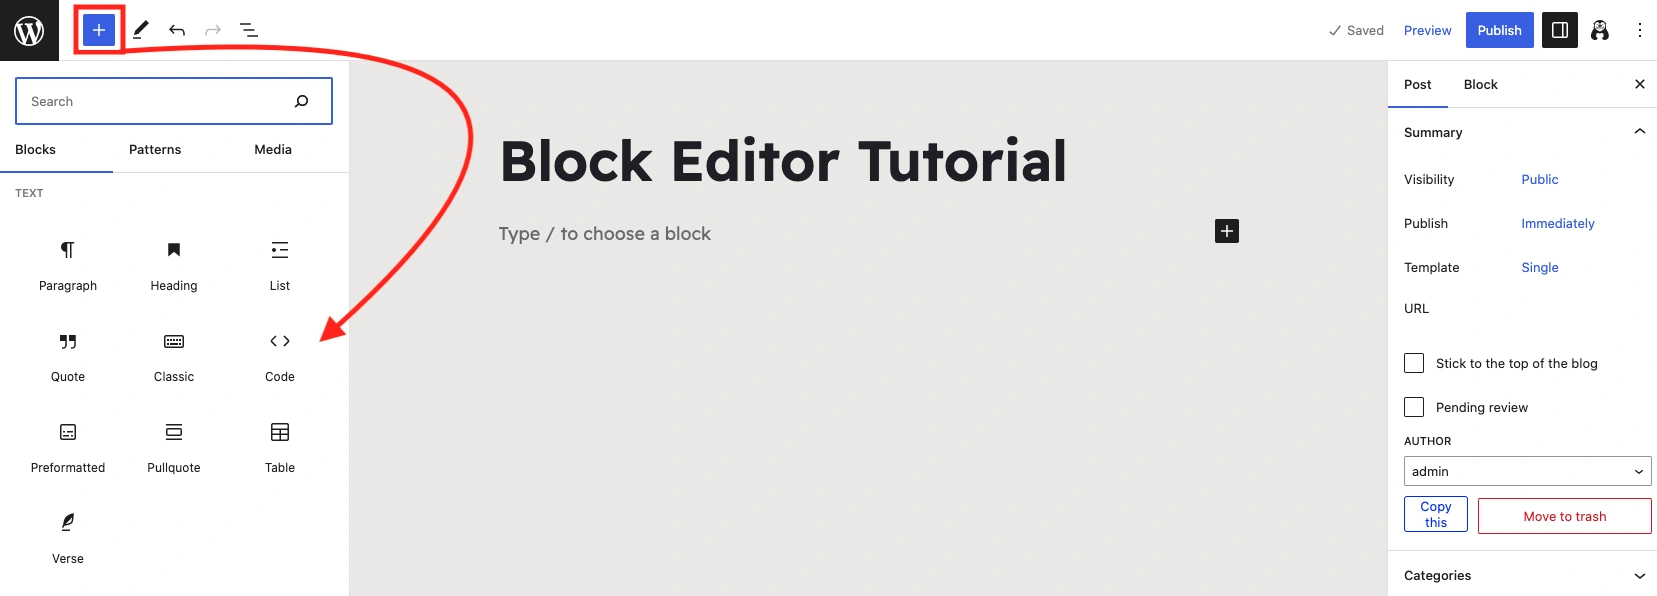 Размещение блоков в редакторе блоков WordPress первым способом.